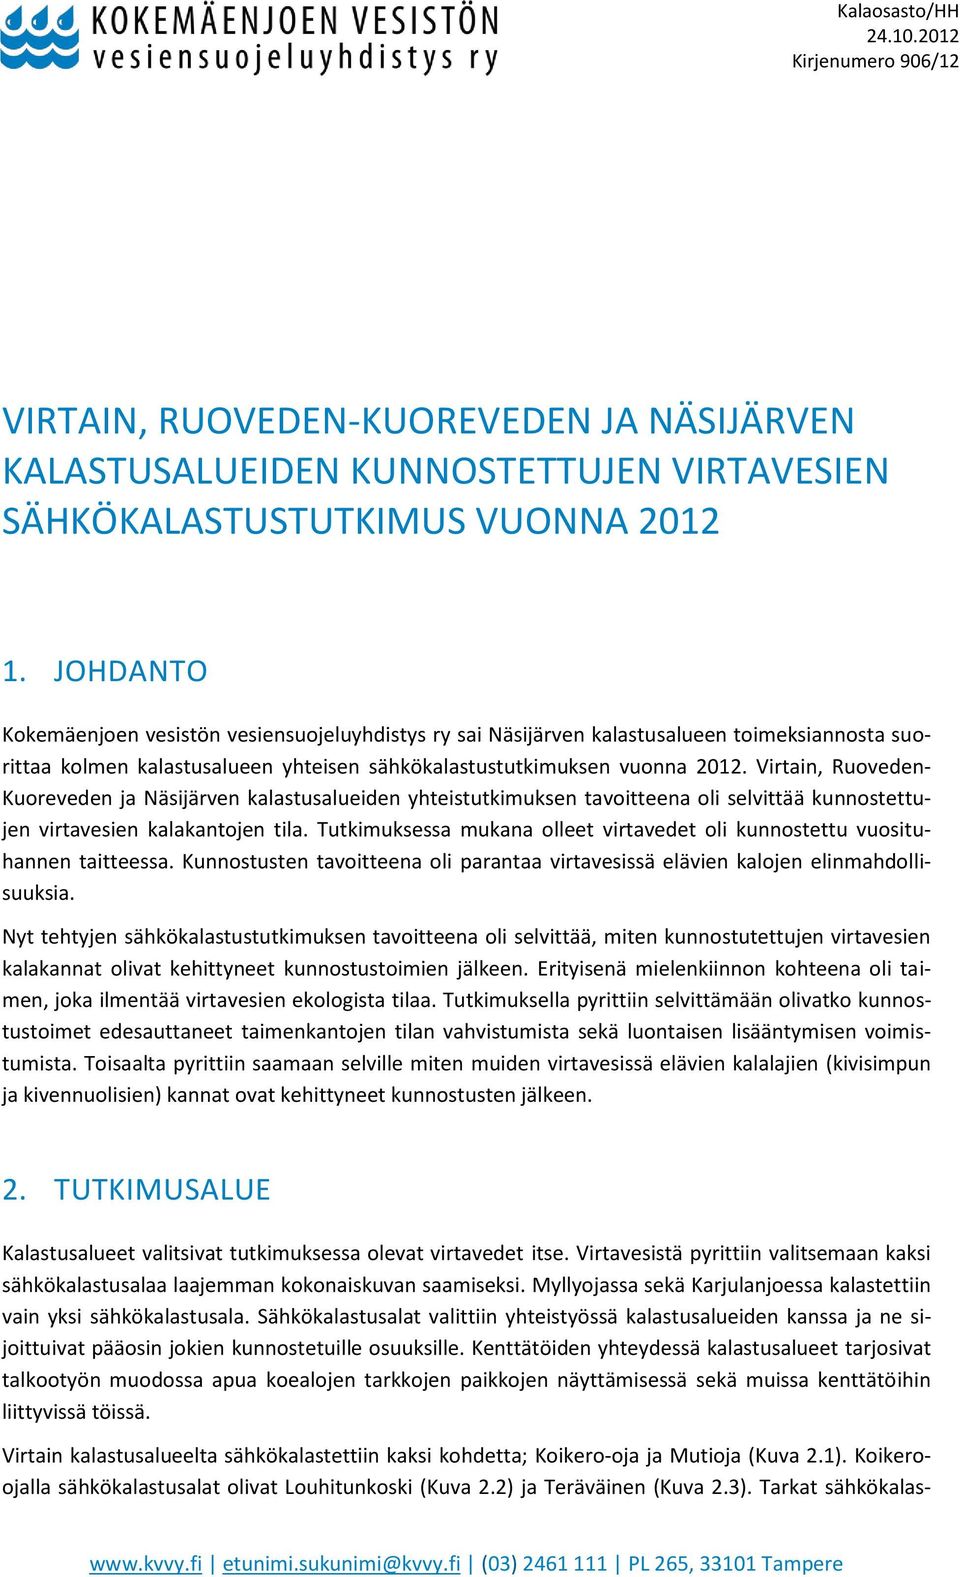 Virtain, Ruoveden- Kuoreveden ja Näsijärven kalastusalueiden yhteistutkimuksen tavoitteena oli selvittää kunnostettujen virtavesien kalakantojen tila.